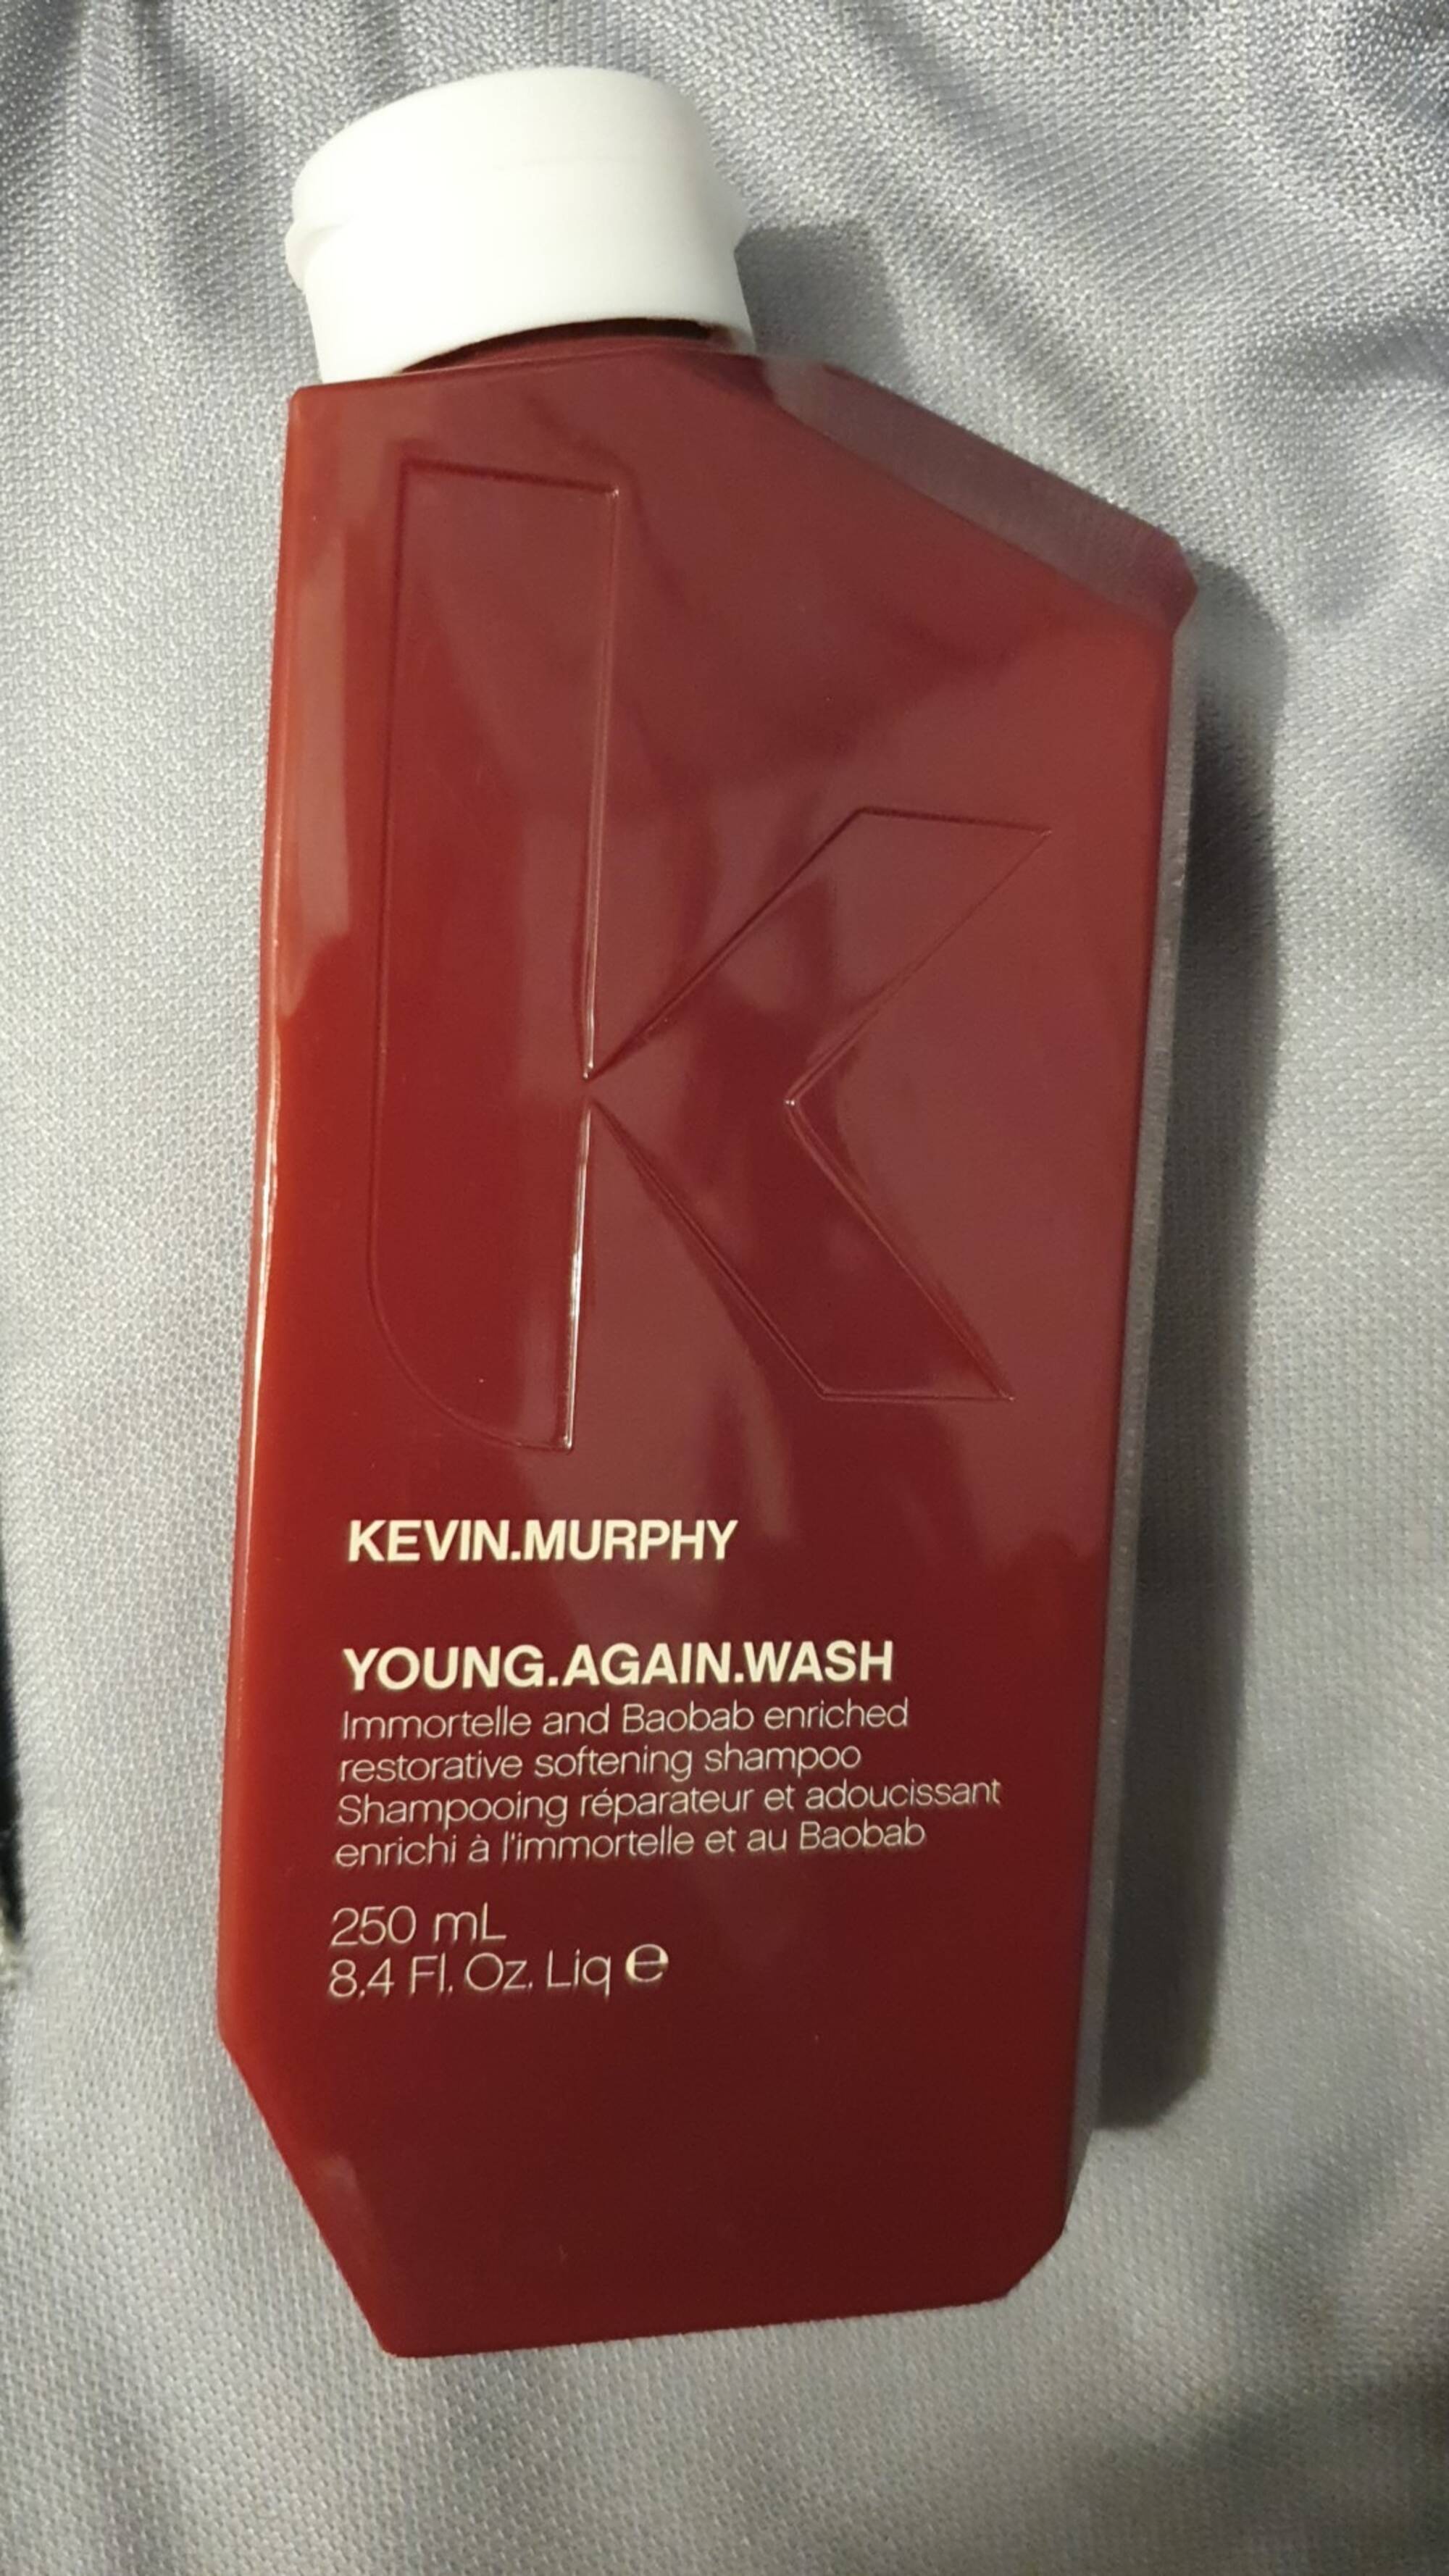 KEVIN MURPHY - Young.again.wash - Shampooing réparateur et adoucissant